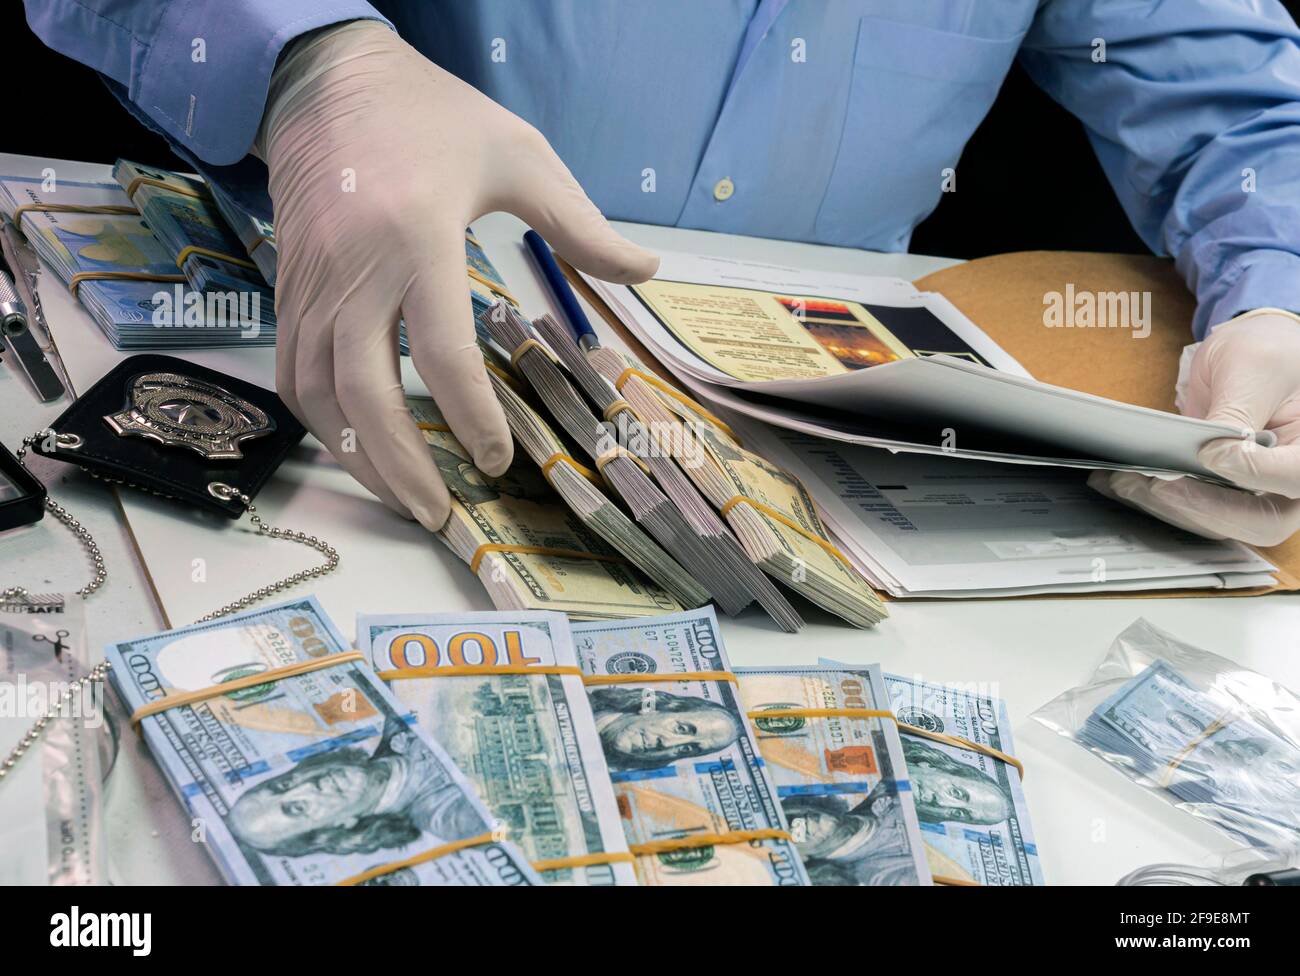 Un agent de police spécialisé note une référence de billet de banque d'un vol qualifié dans une unité d'enquête criminelle, image conceptuelle Banque D'Images